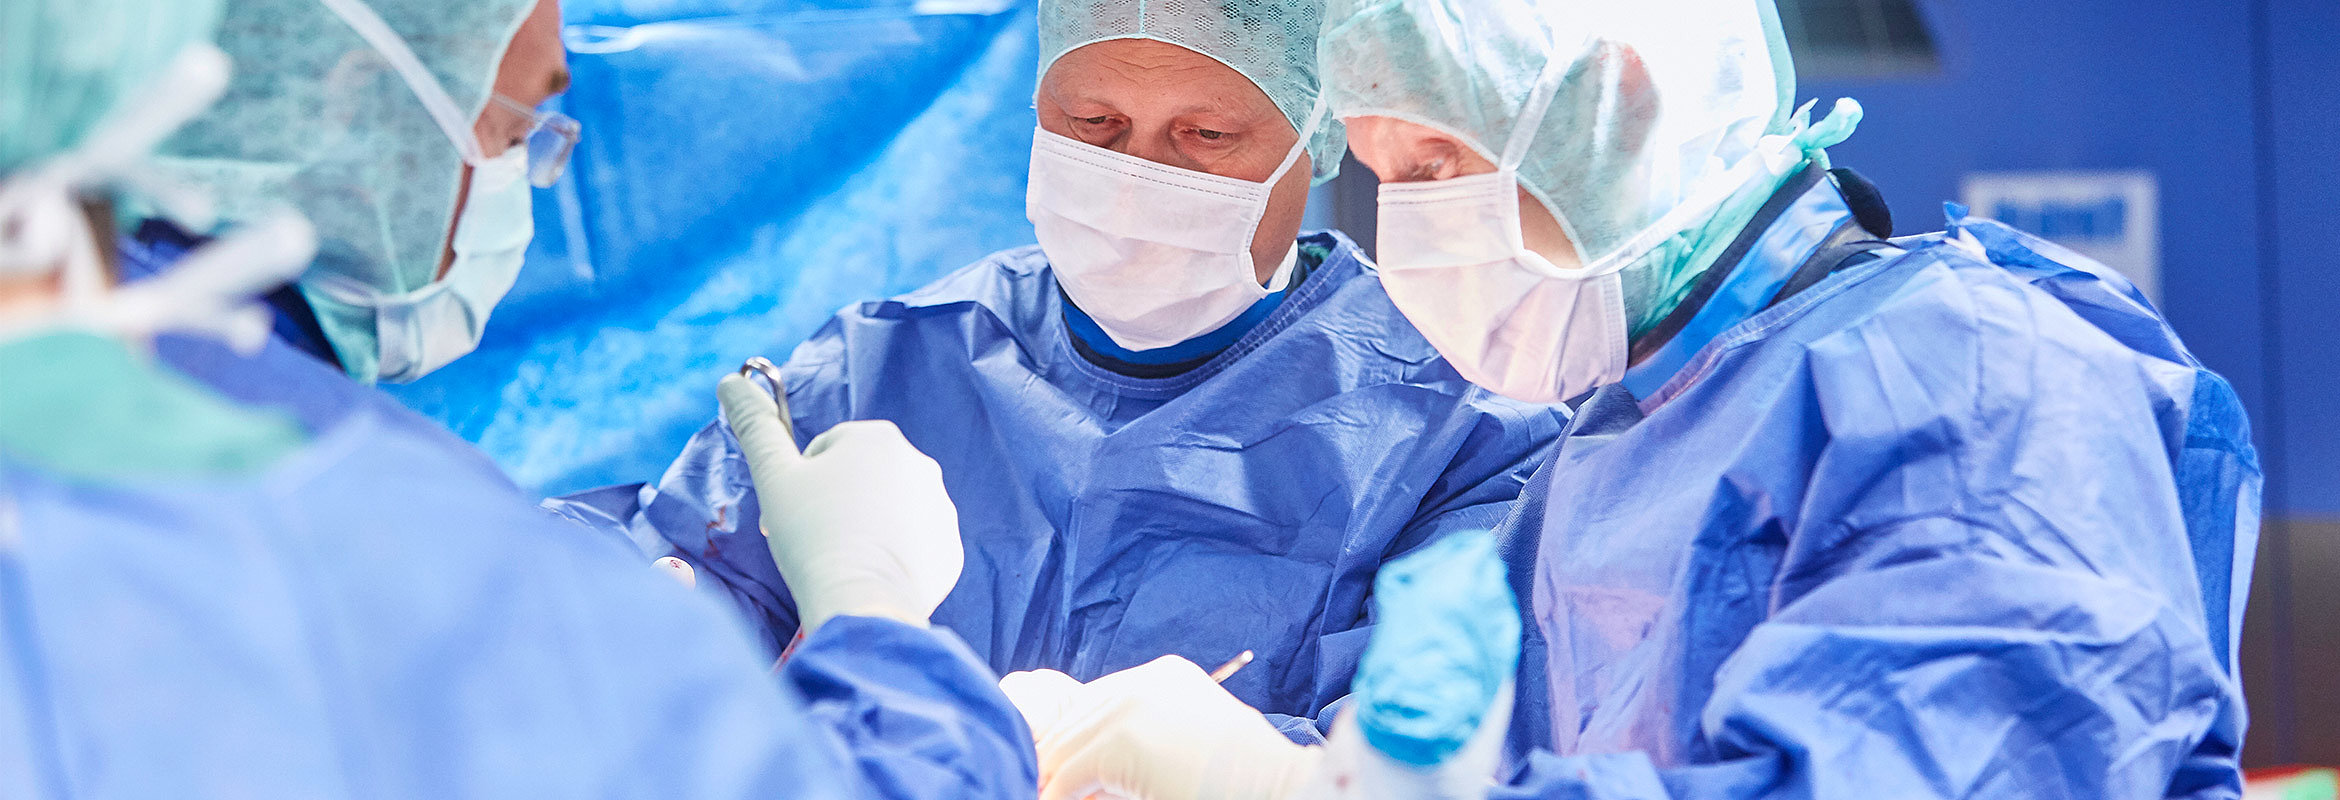 Ärzte der Klinik für Unfallchirurgie und Orthopädie in Kaiserslautern am OP-Tisch